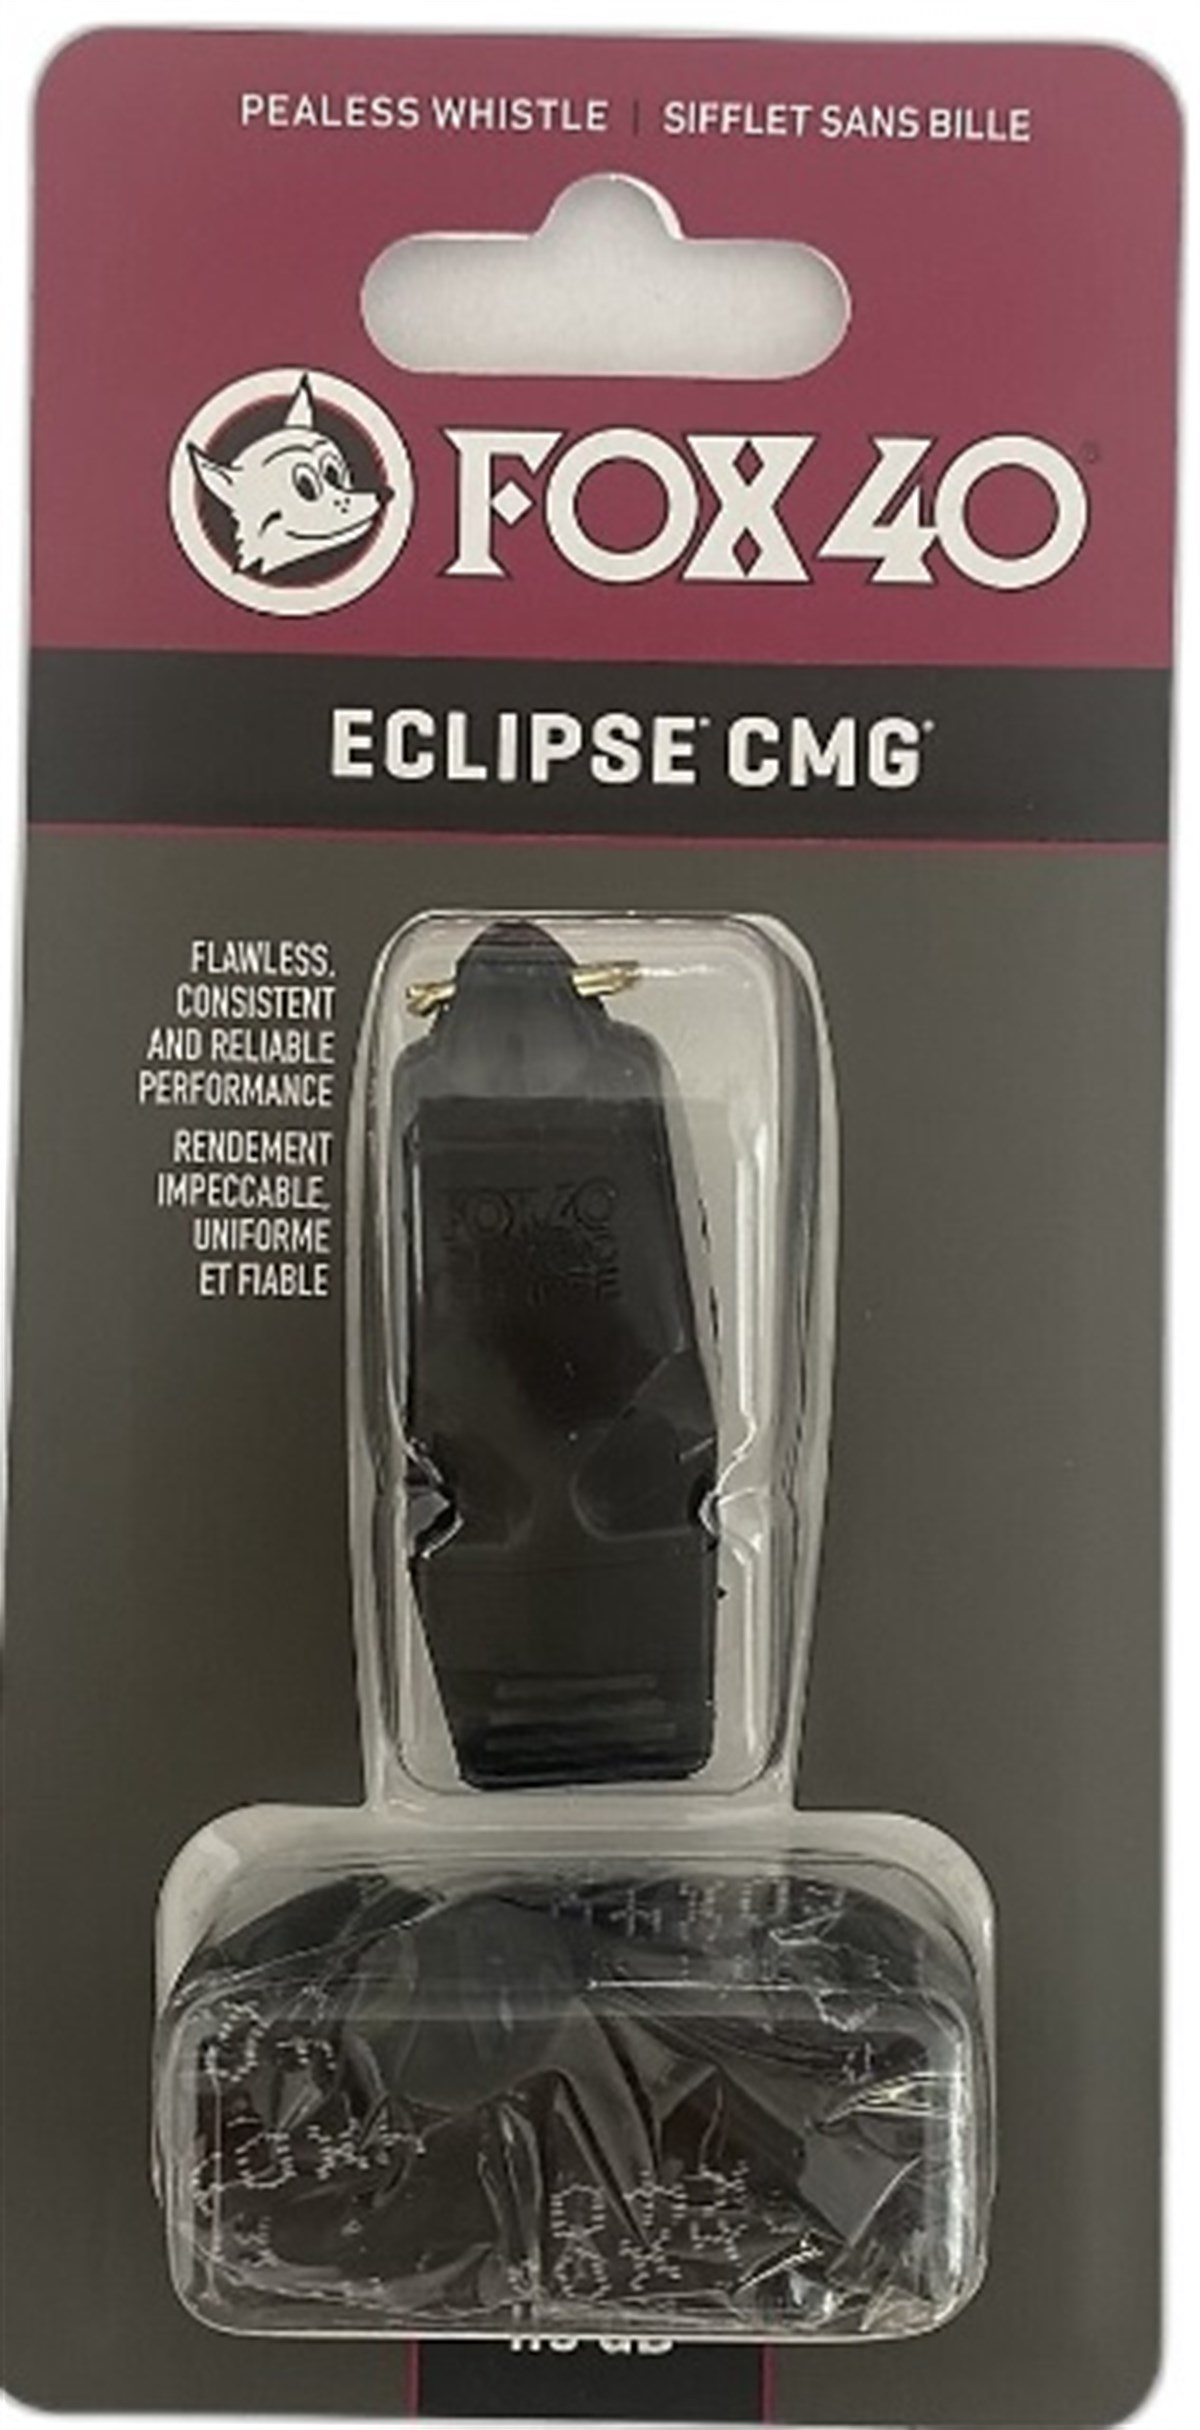 Fox 40 Eclipse CMG Hakem-Antrenör Düdüğü + İpi Siyah - Kodispa